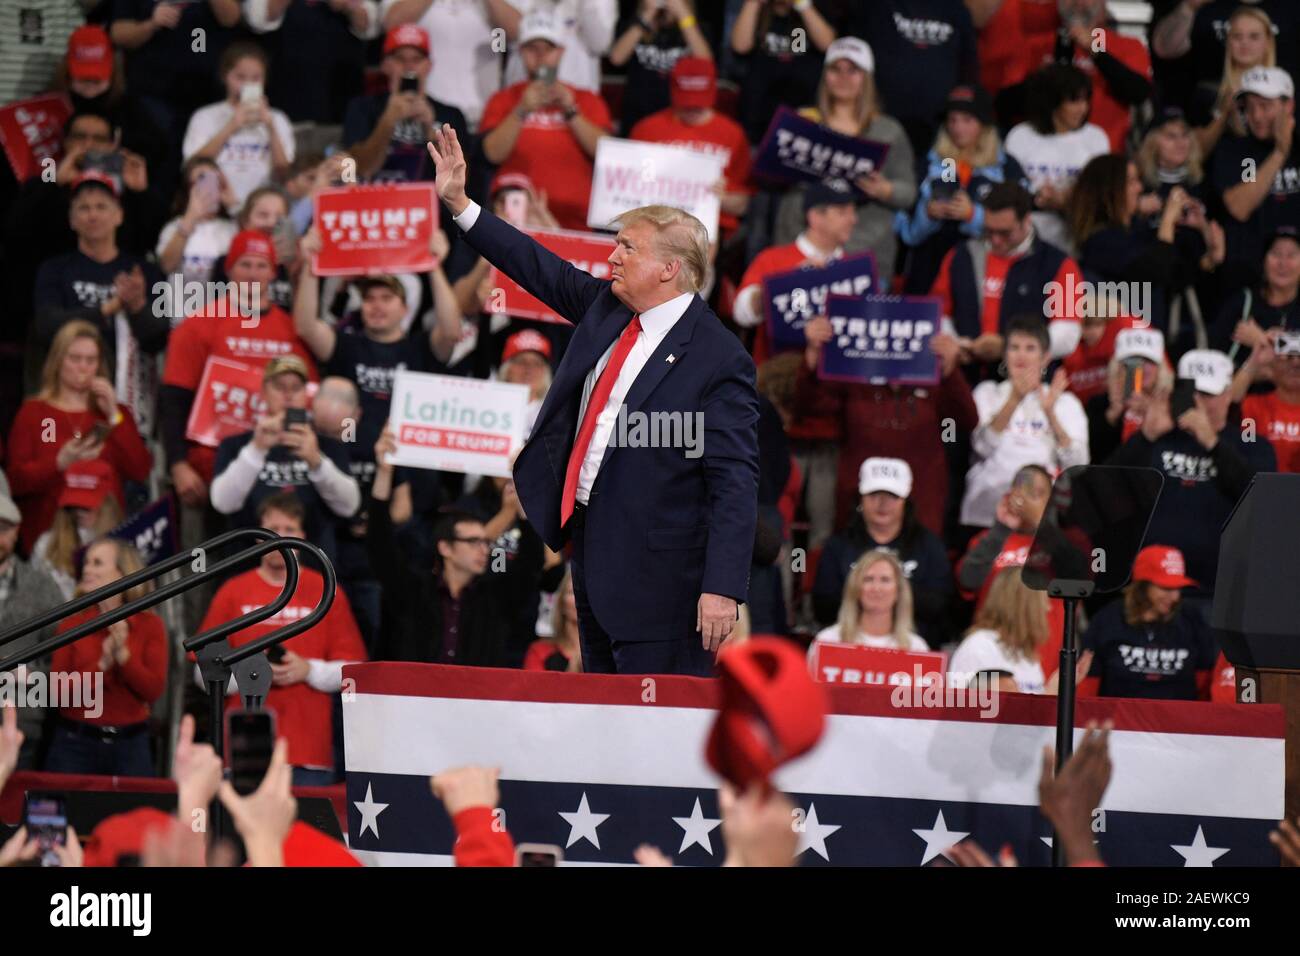 HERSHEY, PA - 10 décembre : le président américain Donald Trump assiste à un rassemblement électoral le 10 décembre 2019 à Giant Center à Hershey, en Pennsylvanie. Banque D'Images